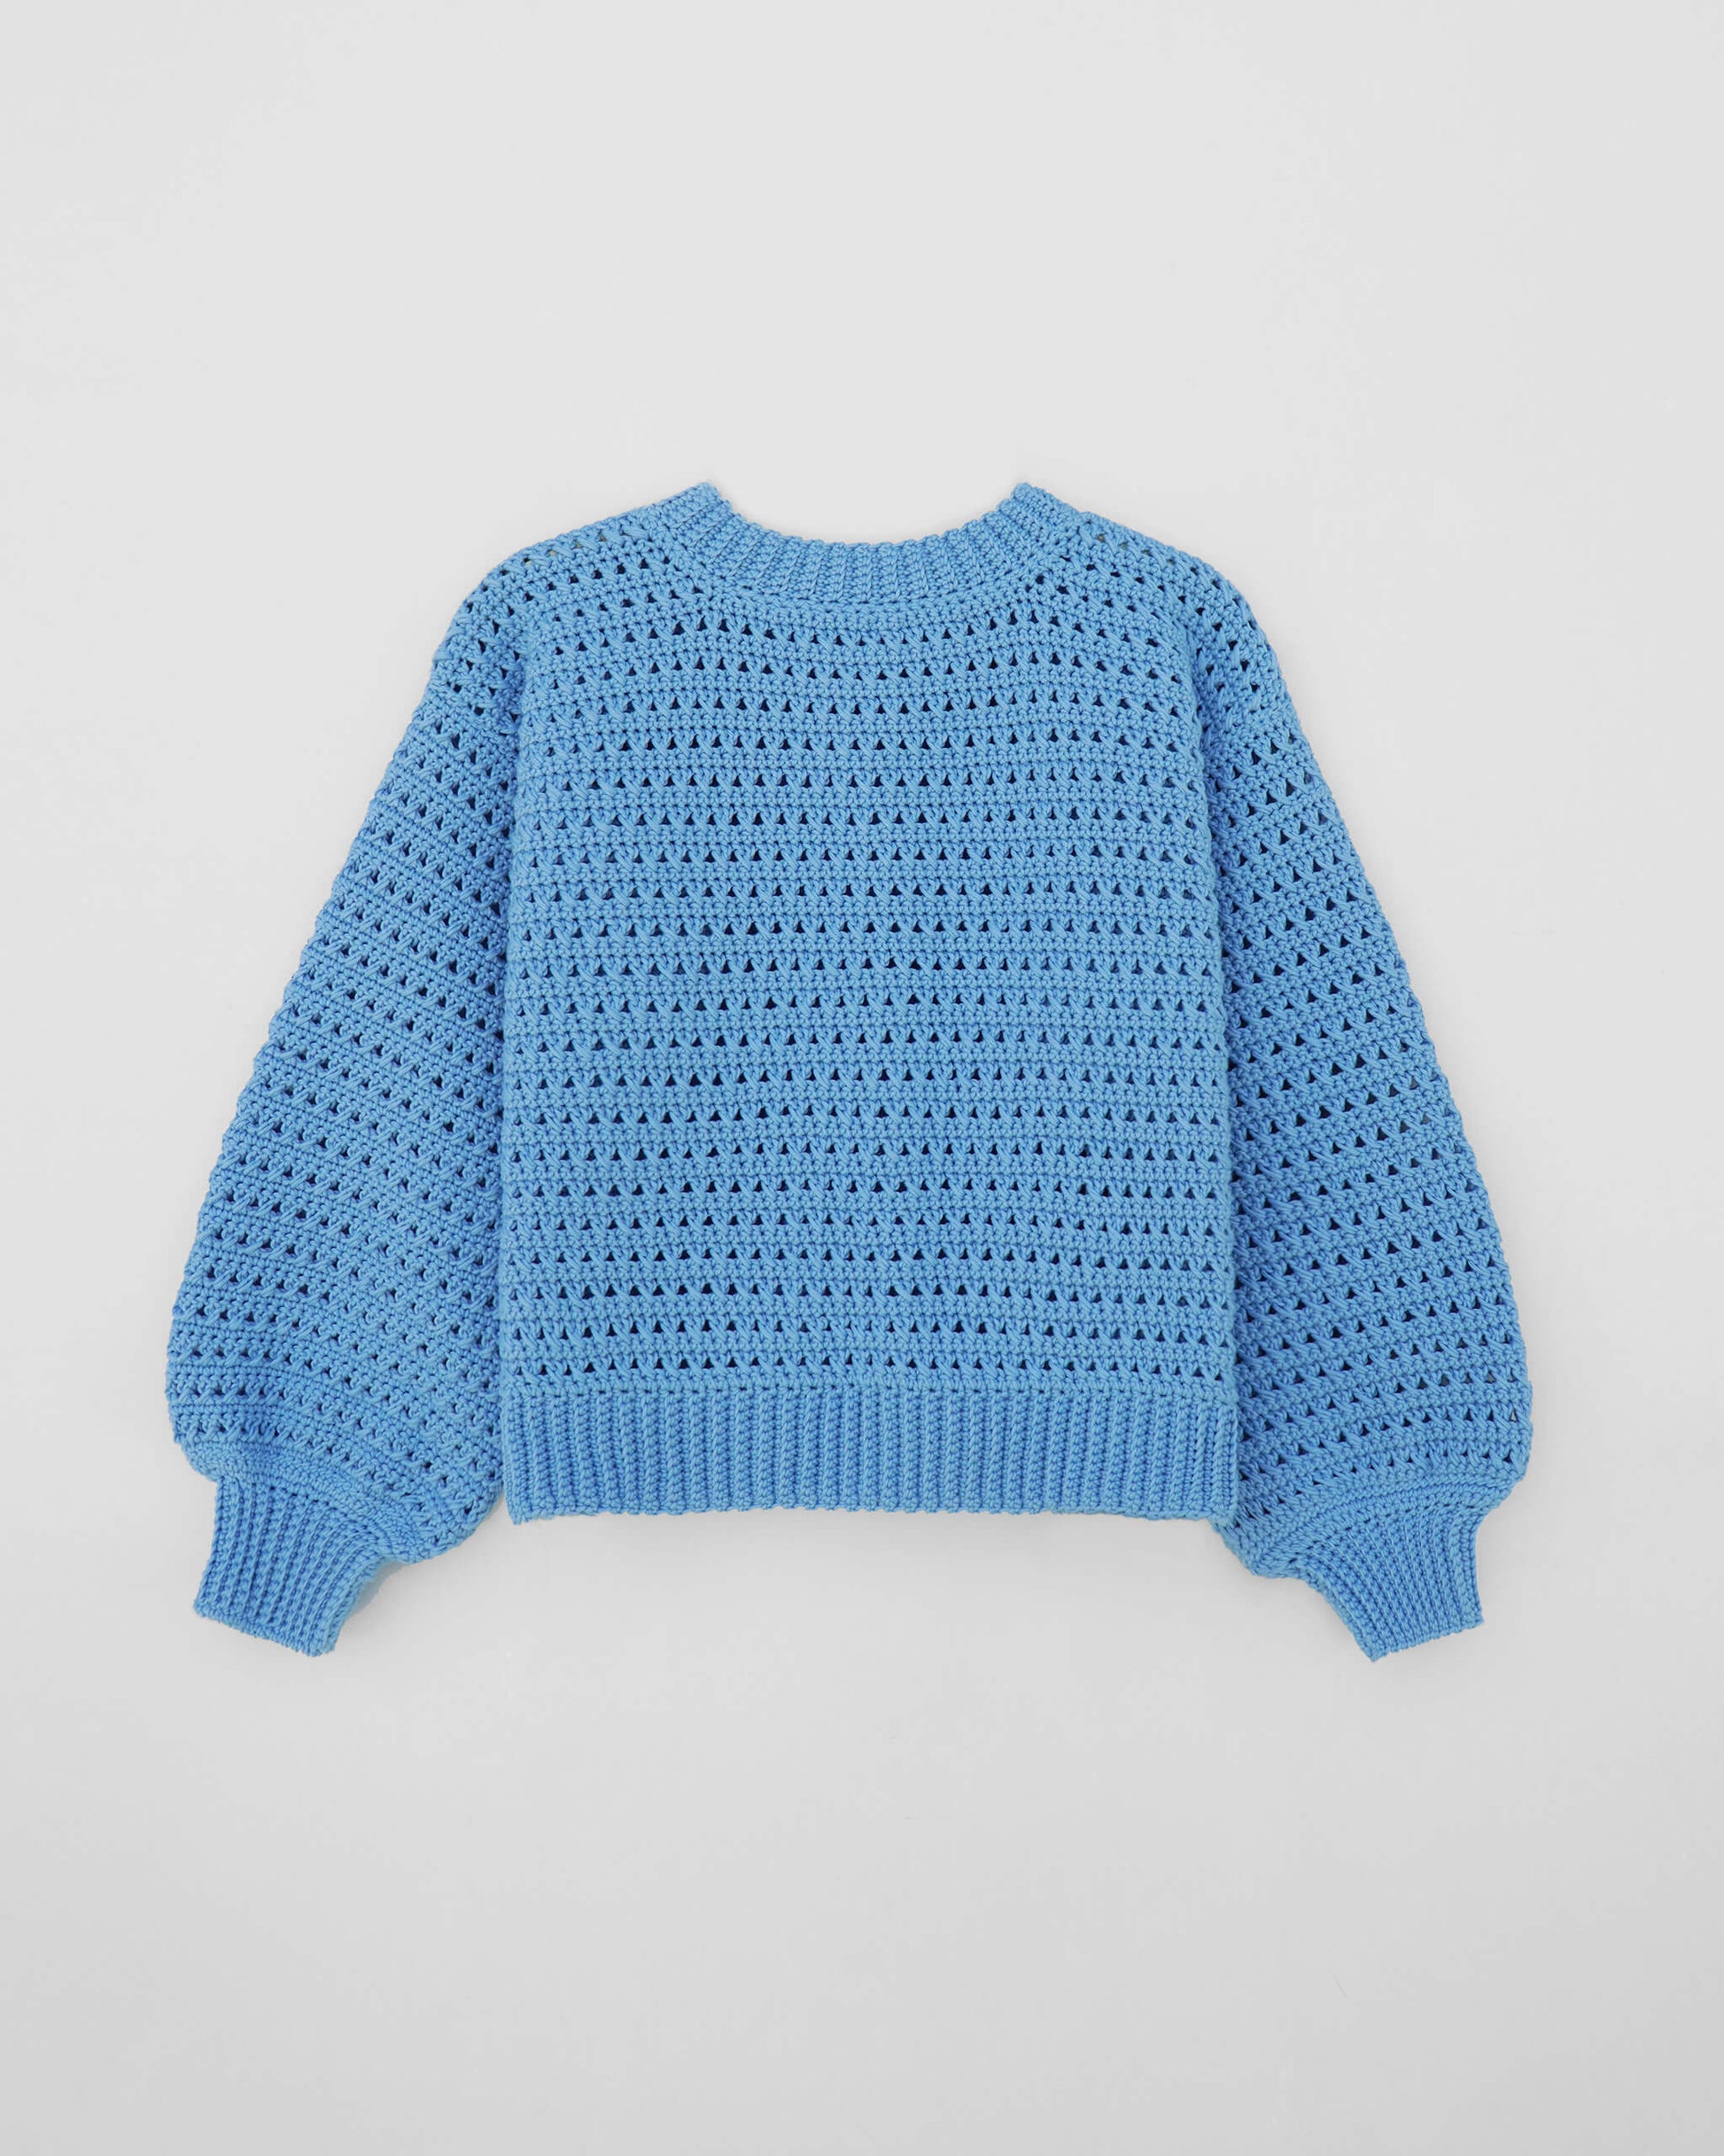 Easy crochet pattern